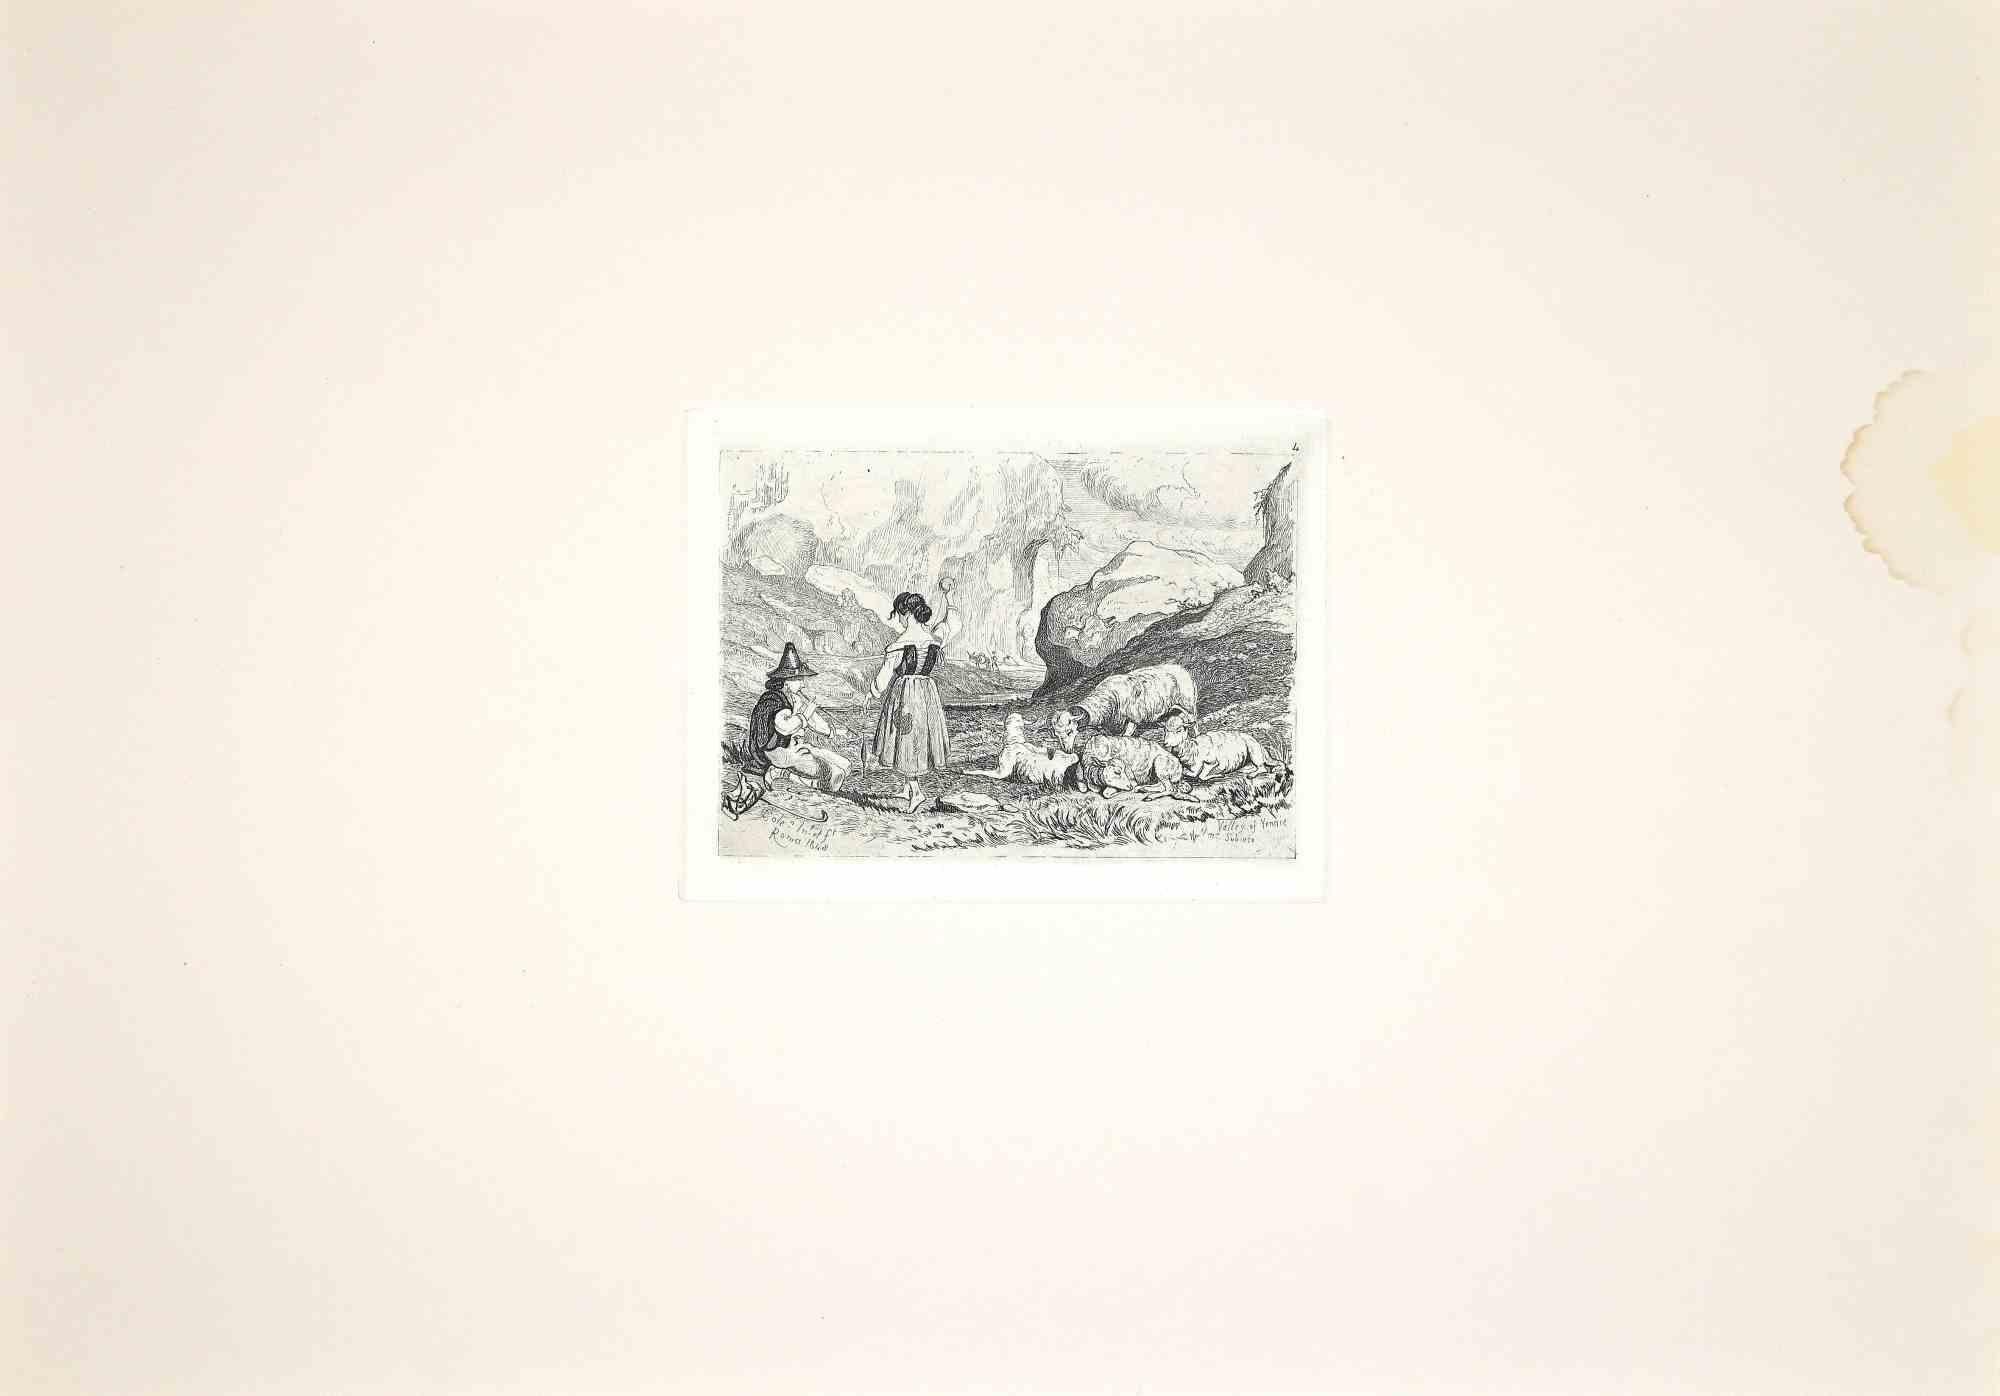 Le berger jouant dans la campagne romaine est une gravure originale réalisée par Charles Coleman (1807, Yorkshire - 1874, Rome) en 1992.

Signé sur la plaque. L'édition rare de seulement 25 exemplaires.

Bon état avec une petite tache.

Cette œuvre